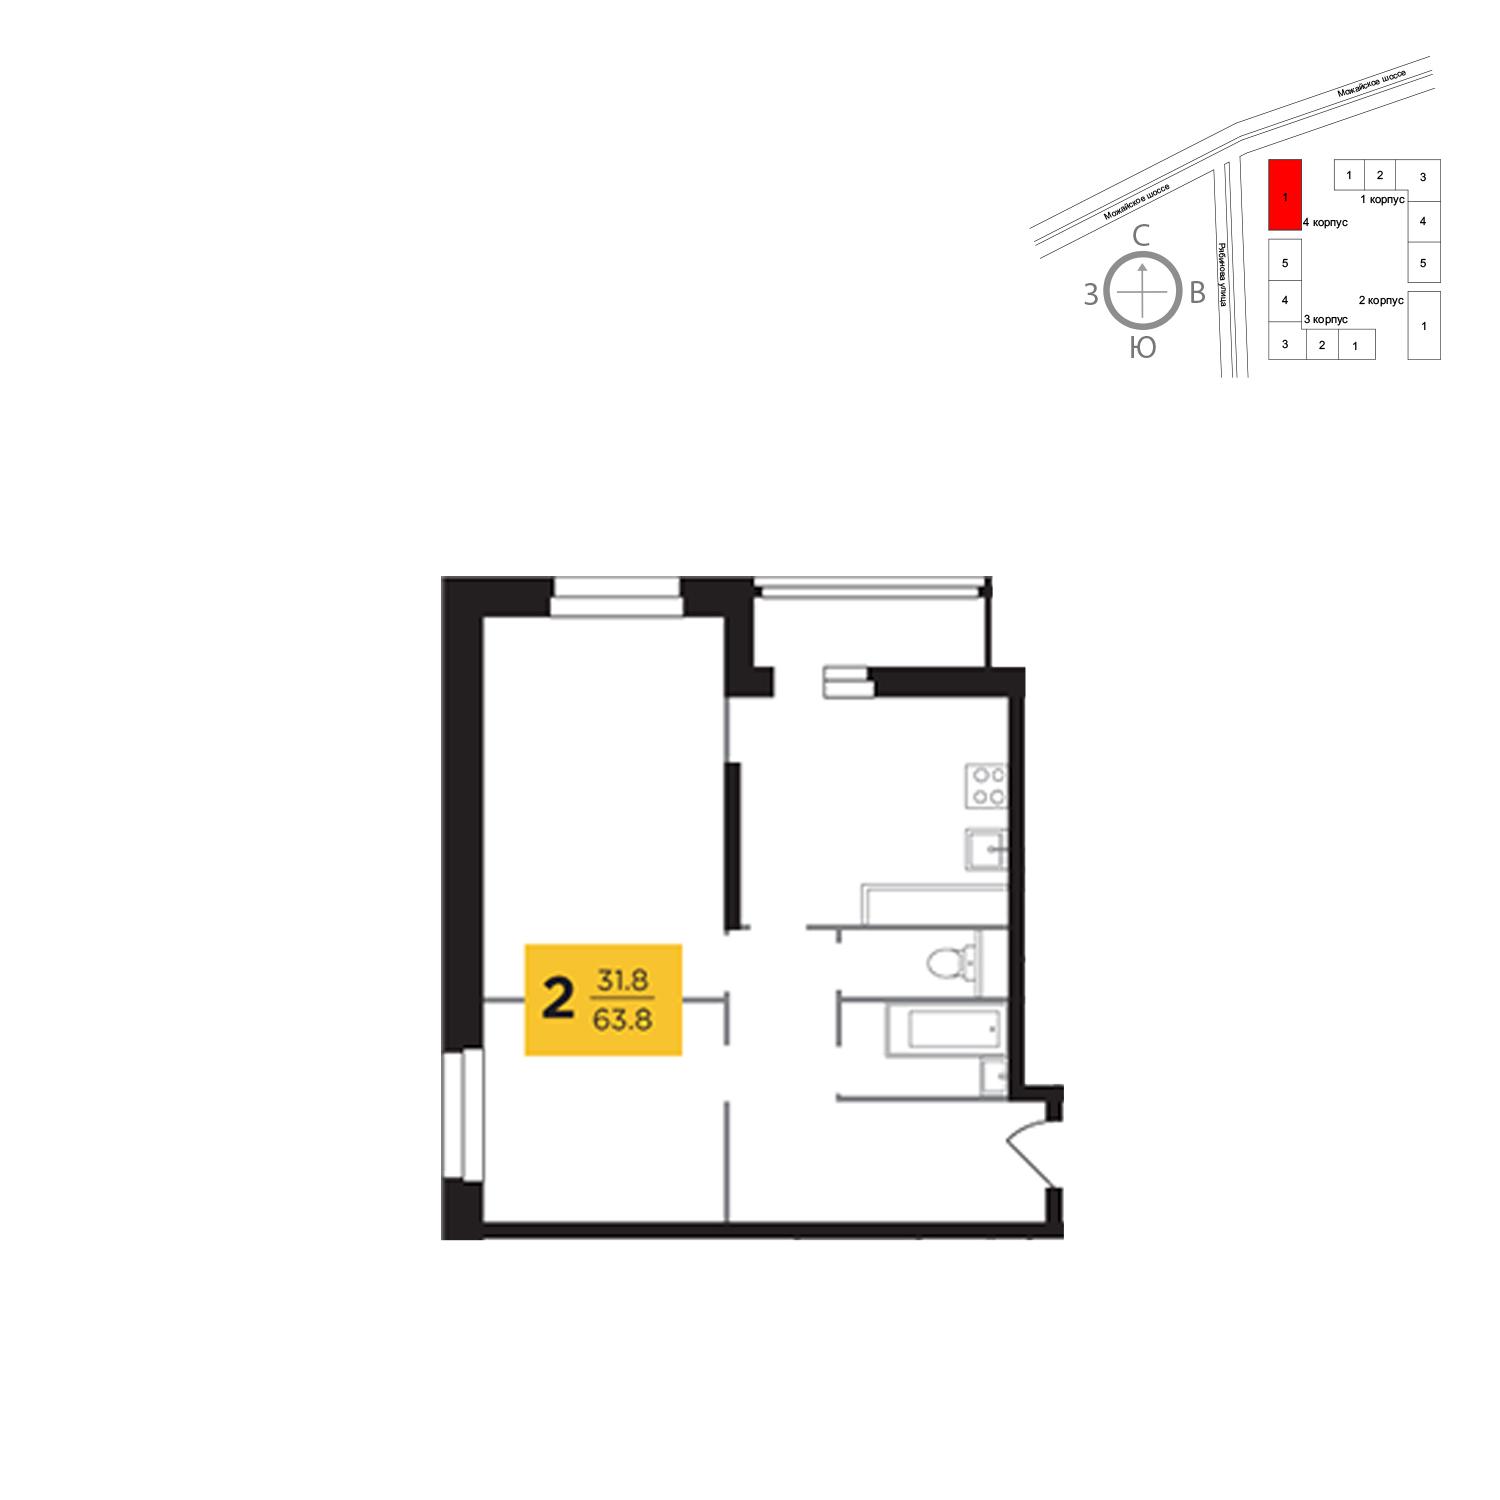 Продаётся 2-комнатная квартира в новостройке 63.8 кв.м. этаж 2/23 за 12 535 974 руб 